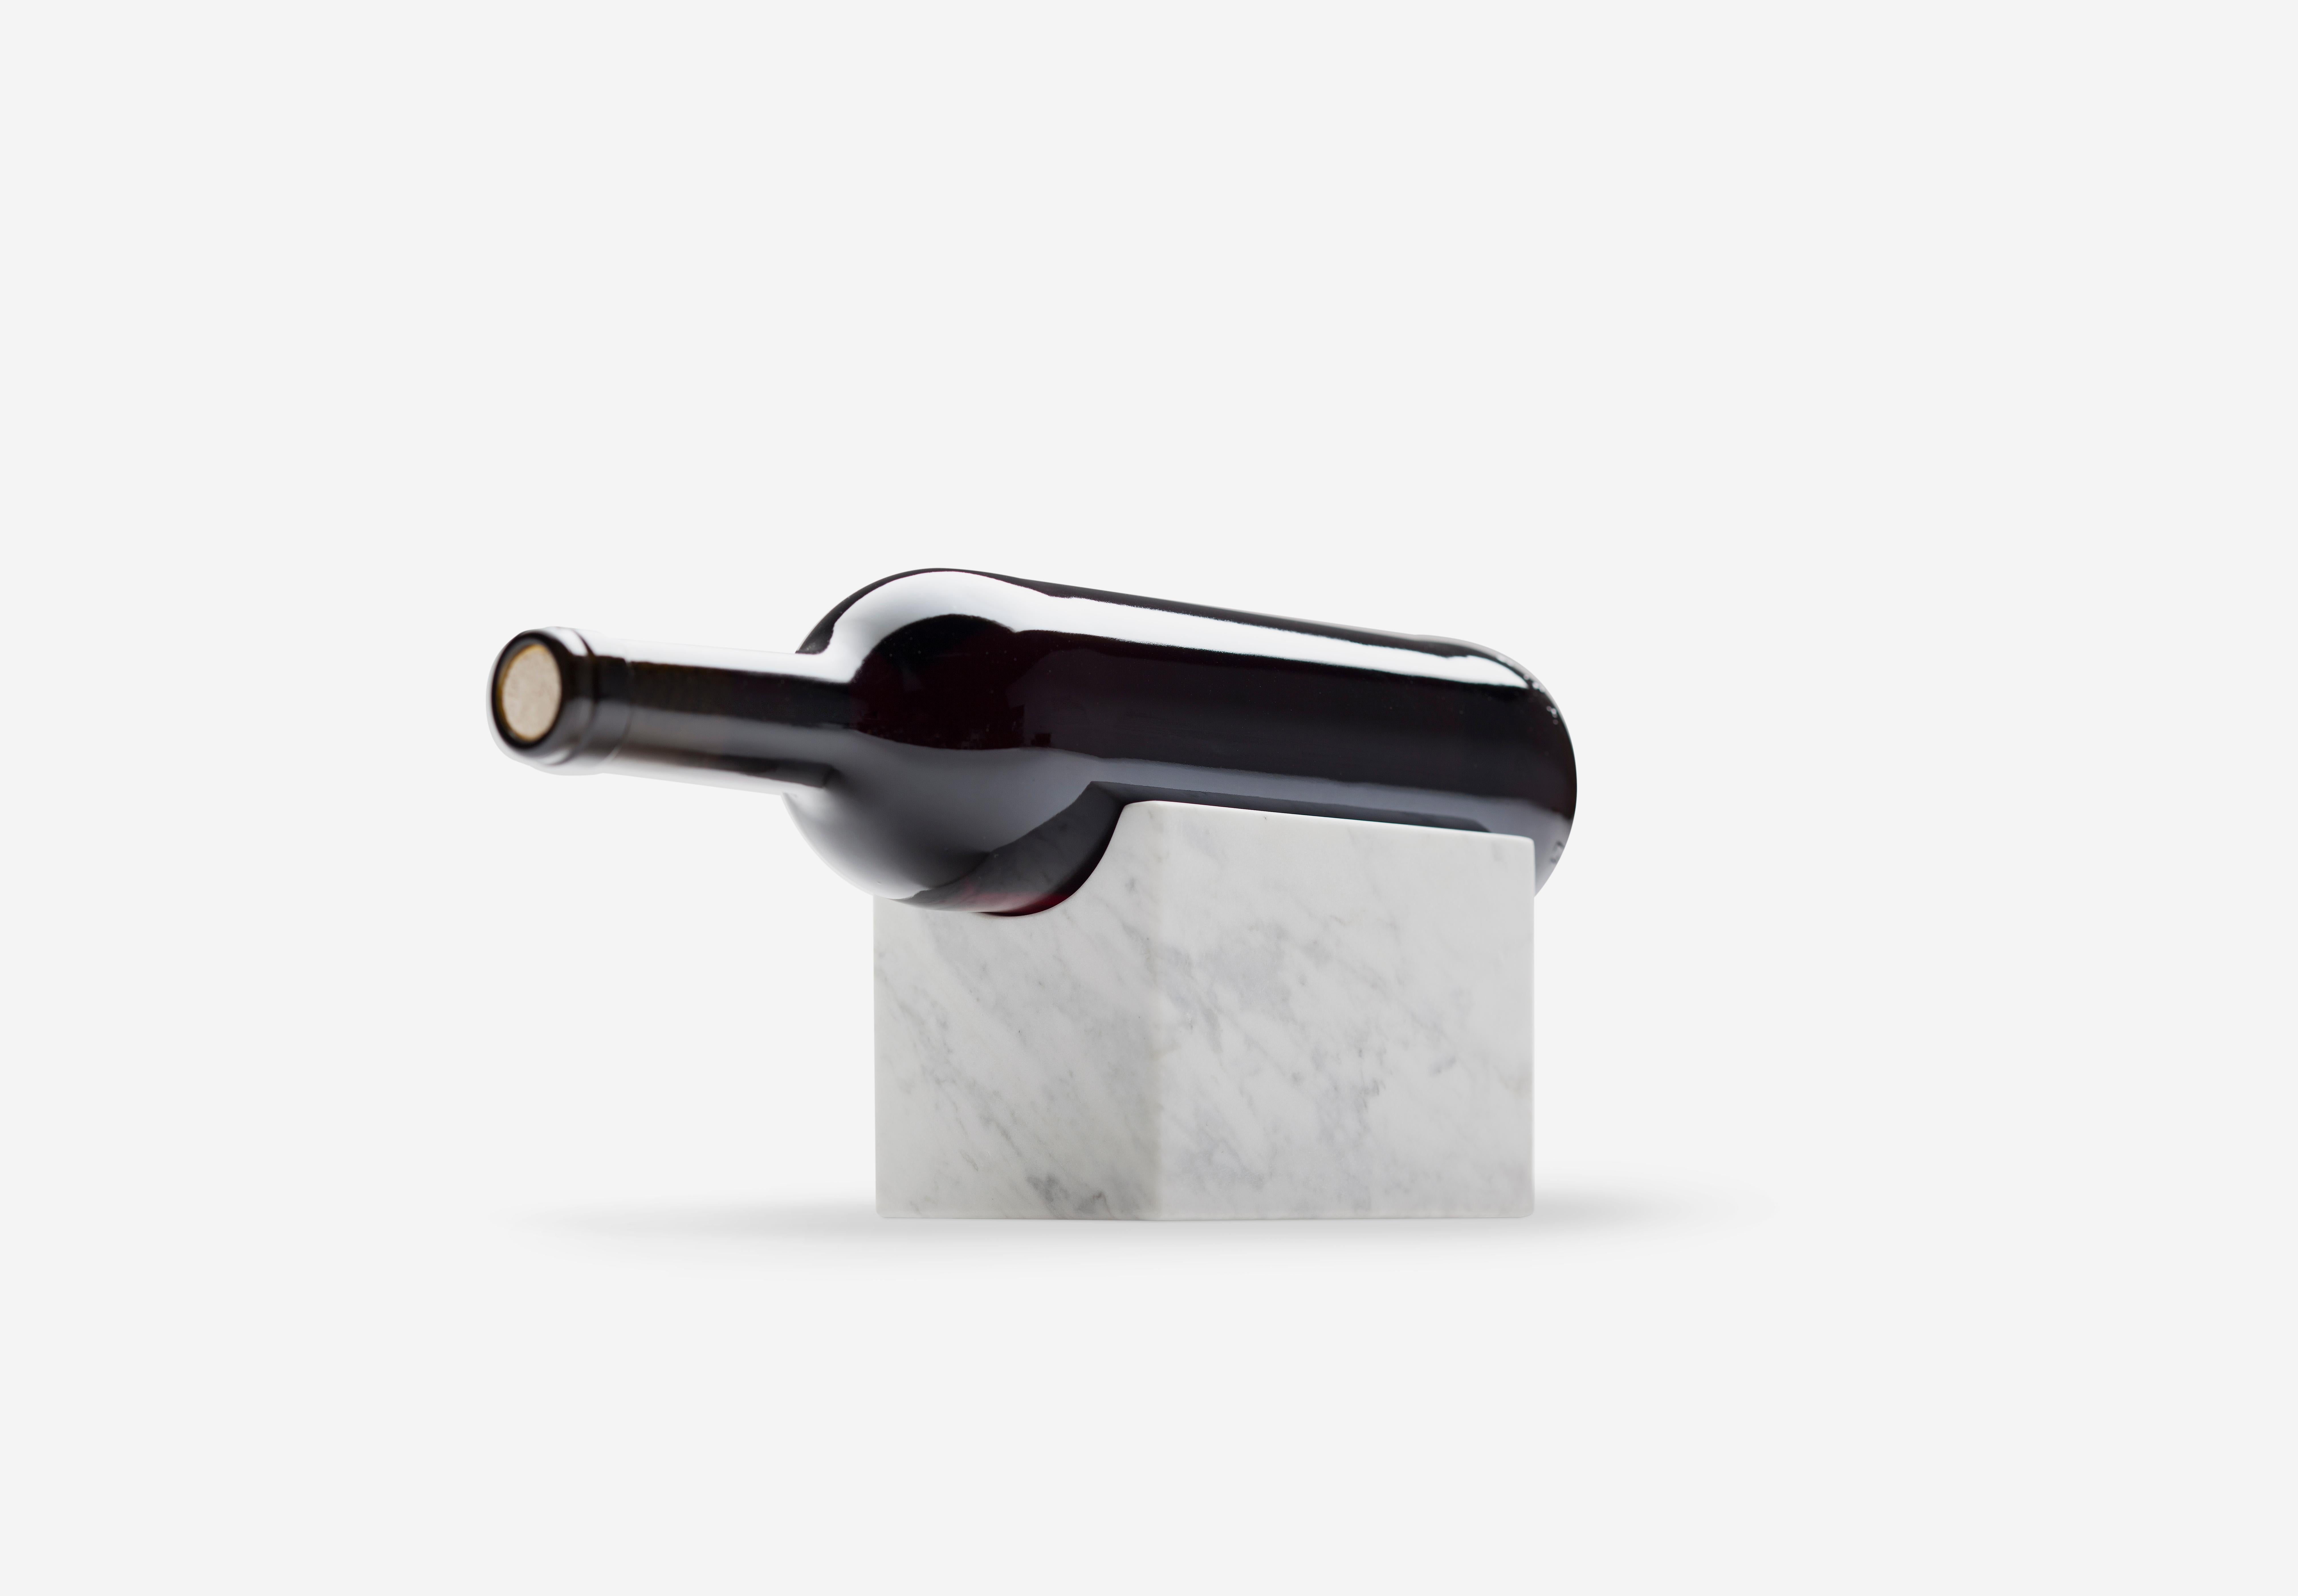 Weinhalter aus marmor von Joseph Vila Capdevila
MATERIALIEN: Carrara-Marmor
Abmessungen: 9 x 9 x 13 cm
Gewicht: 2.5 kg

Aparentment ist ein Raum für Kreation und Innovation, in dem mit Materialien experimentiert wird, mit dem Ziel, robuste,